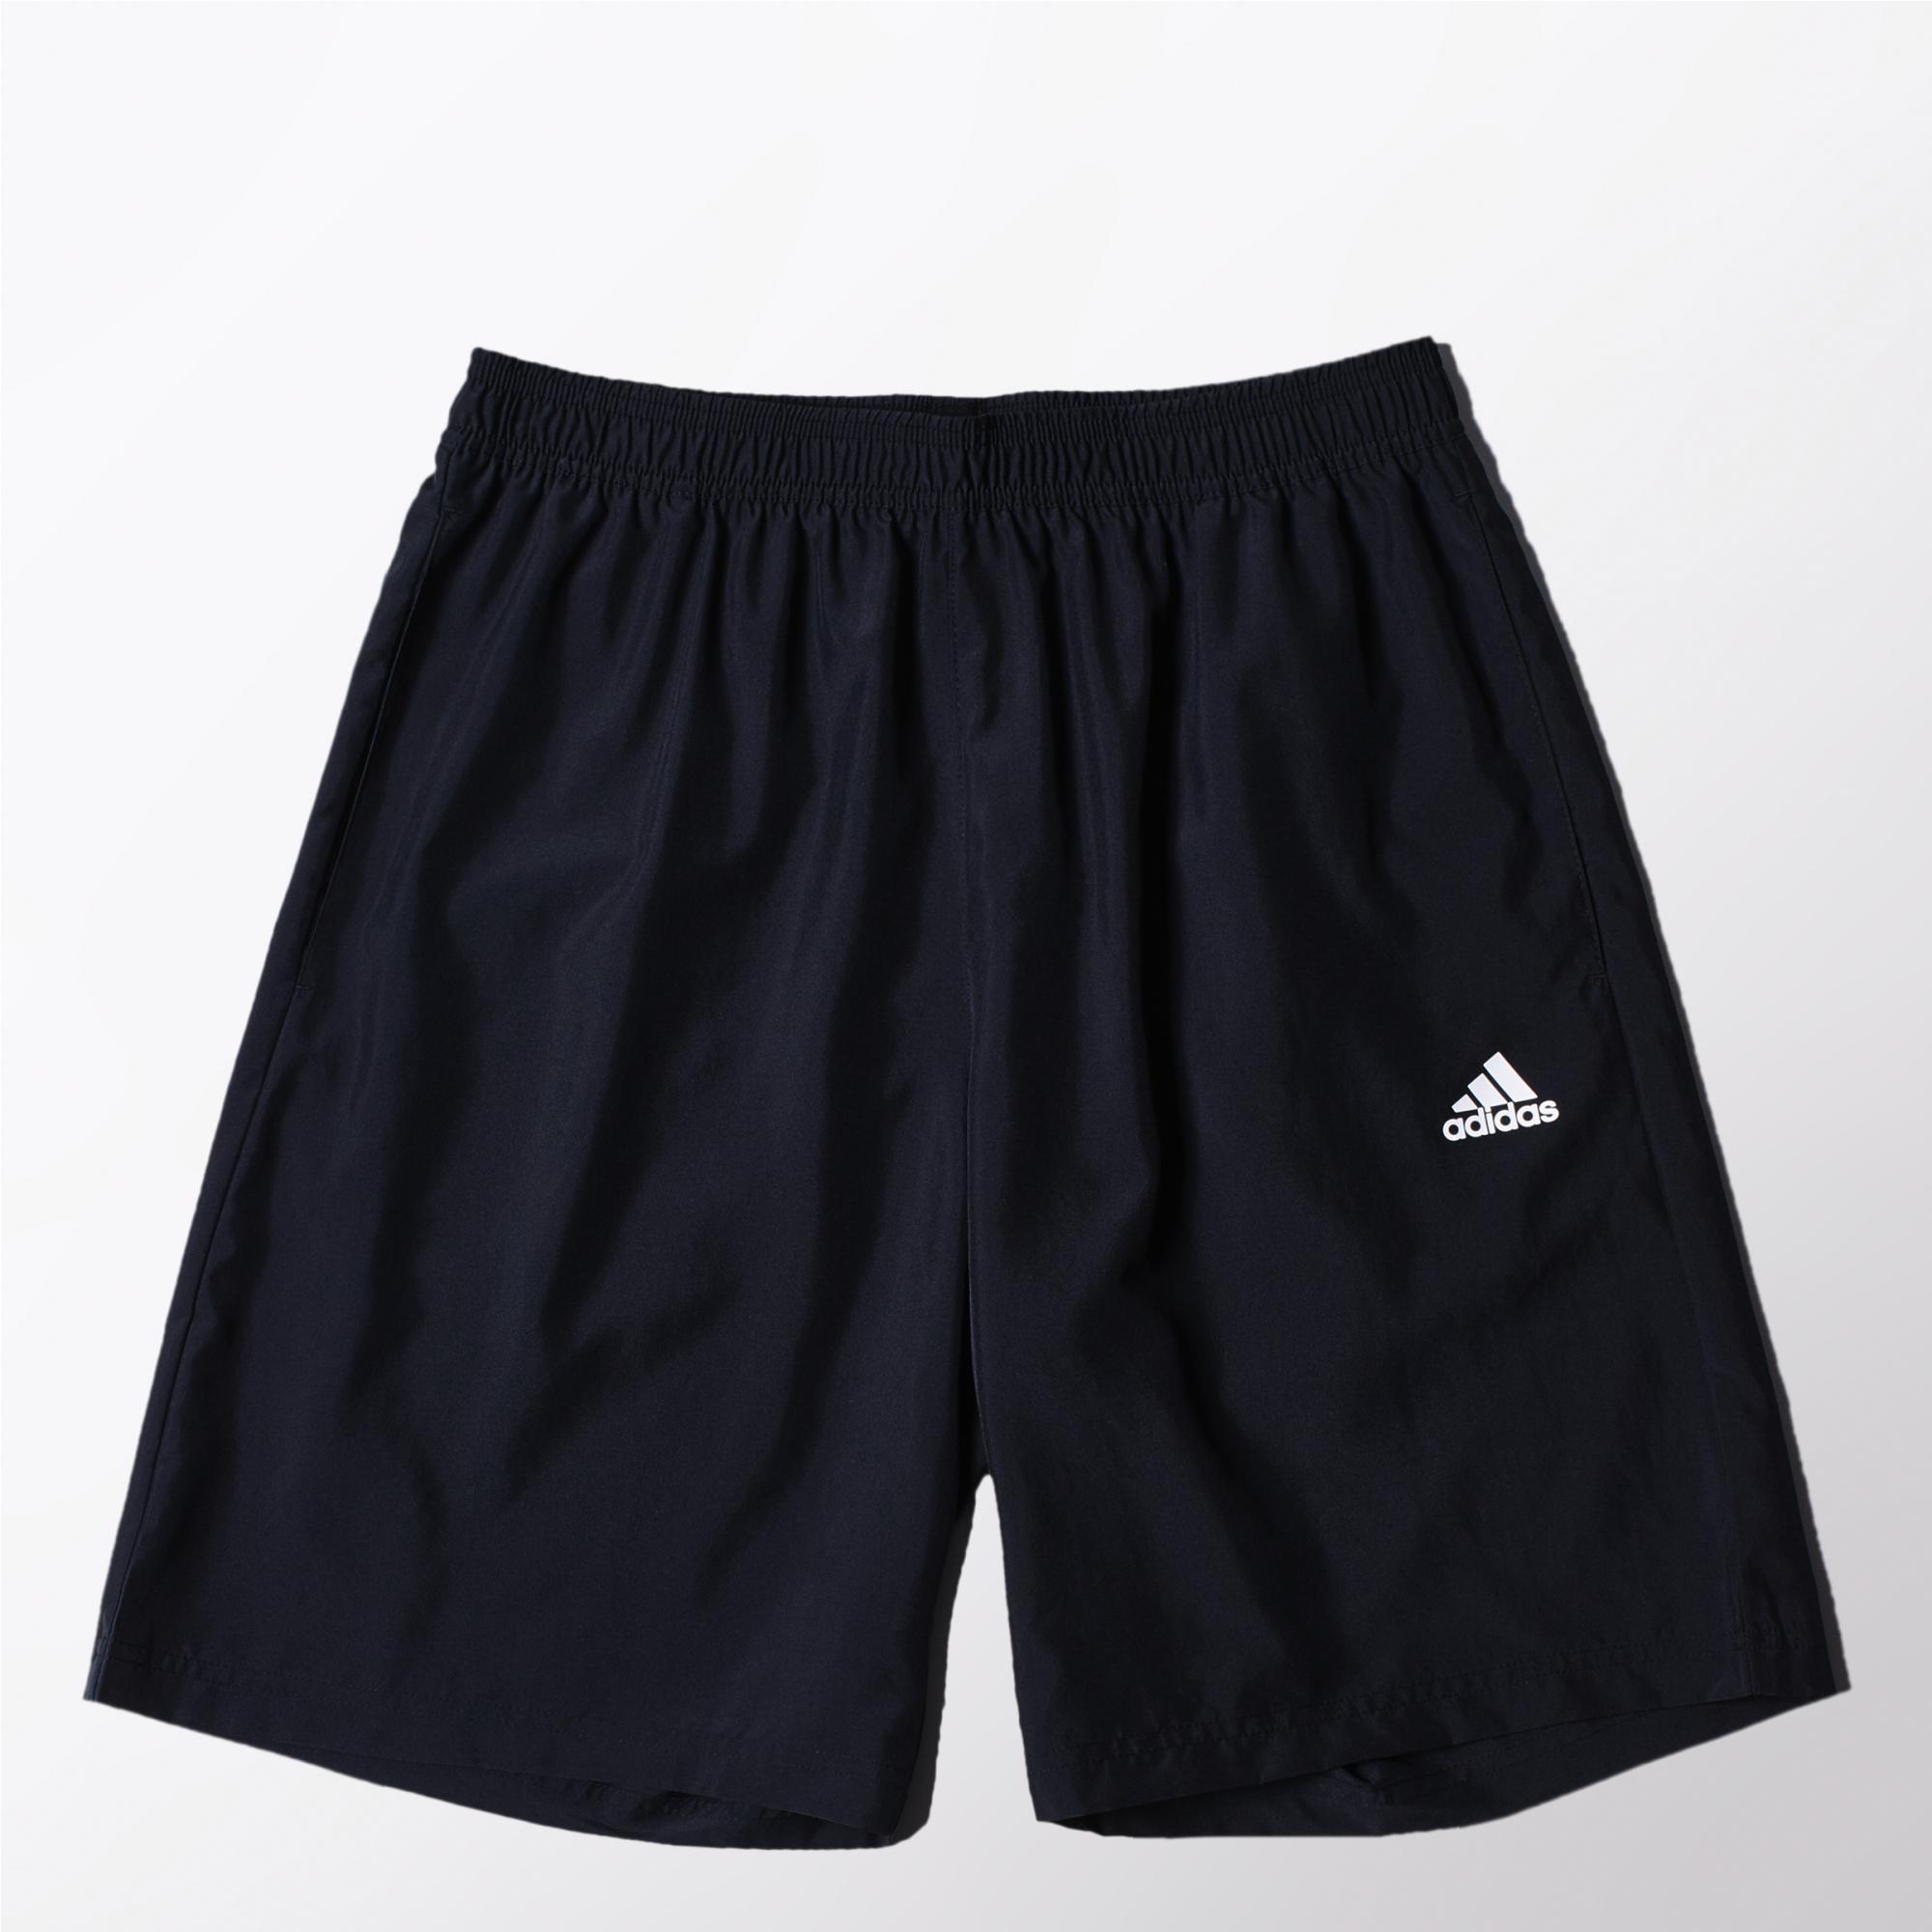 Adidas Mens Sequentials Fab Tennis Shorts - Black - Tennisnuts.com